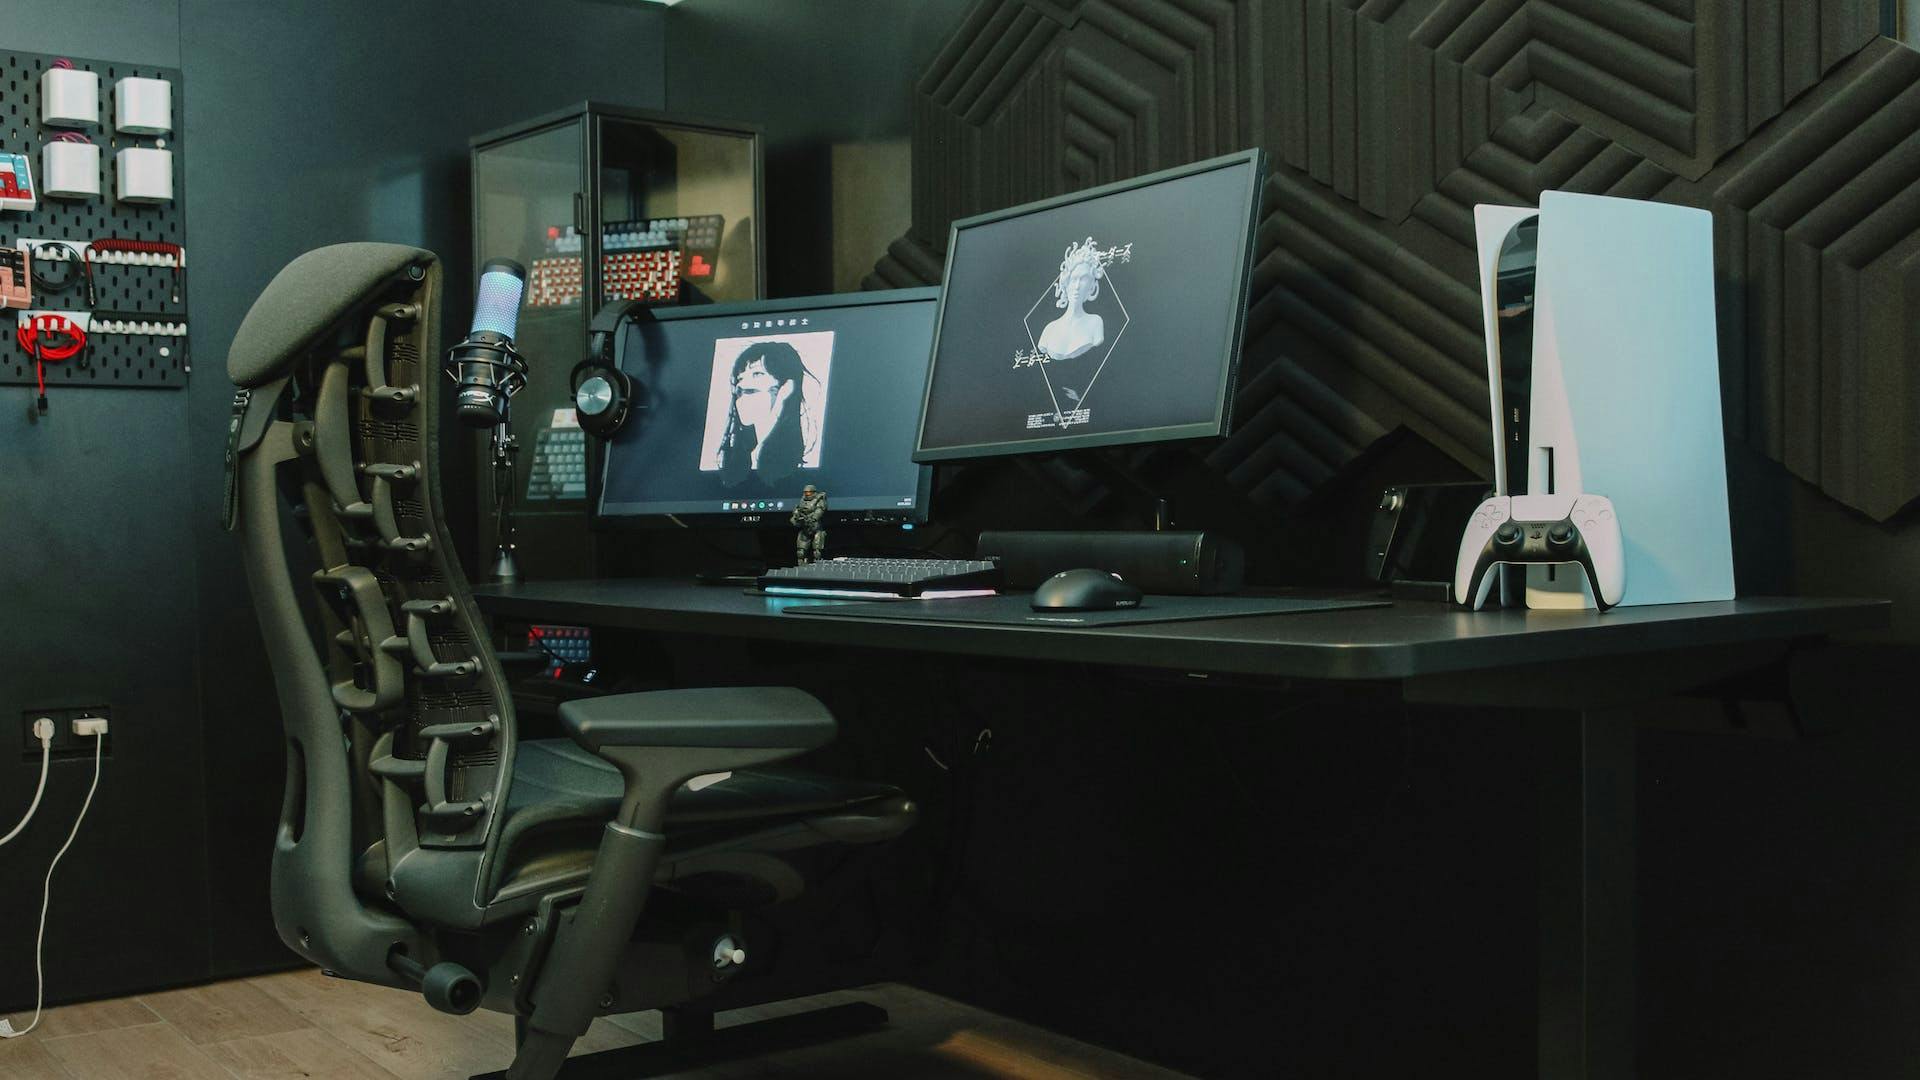 In einem dunkel gehaltenen Gaming Setup mit blauen Neon-Akzenten sitzt eine Person vor einem schwarzen Gaming PC und Playstation